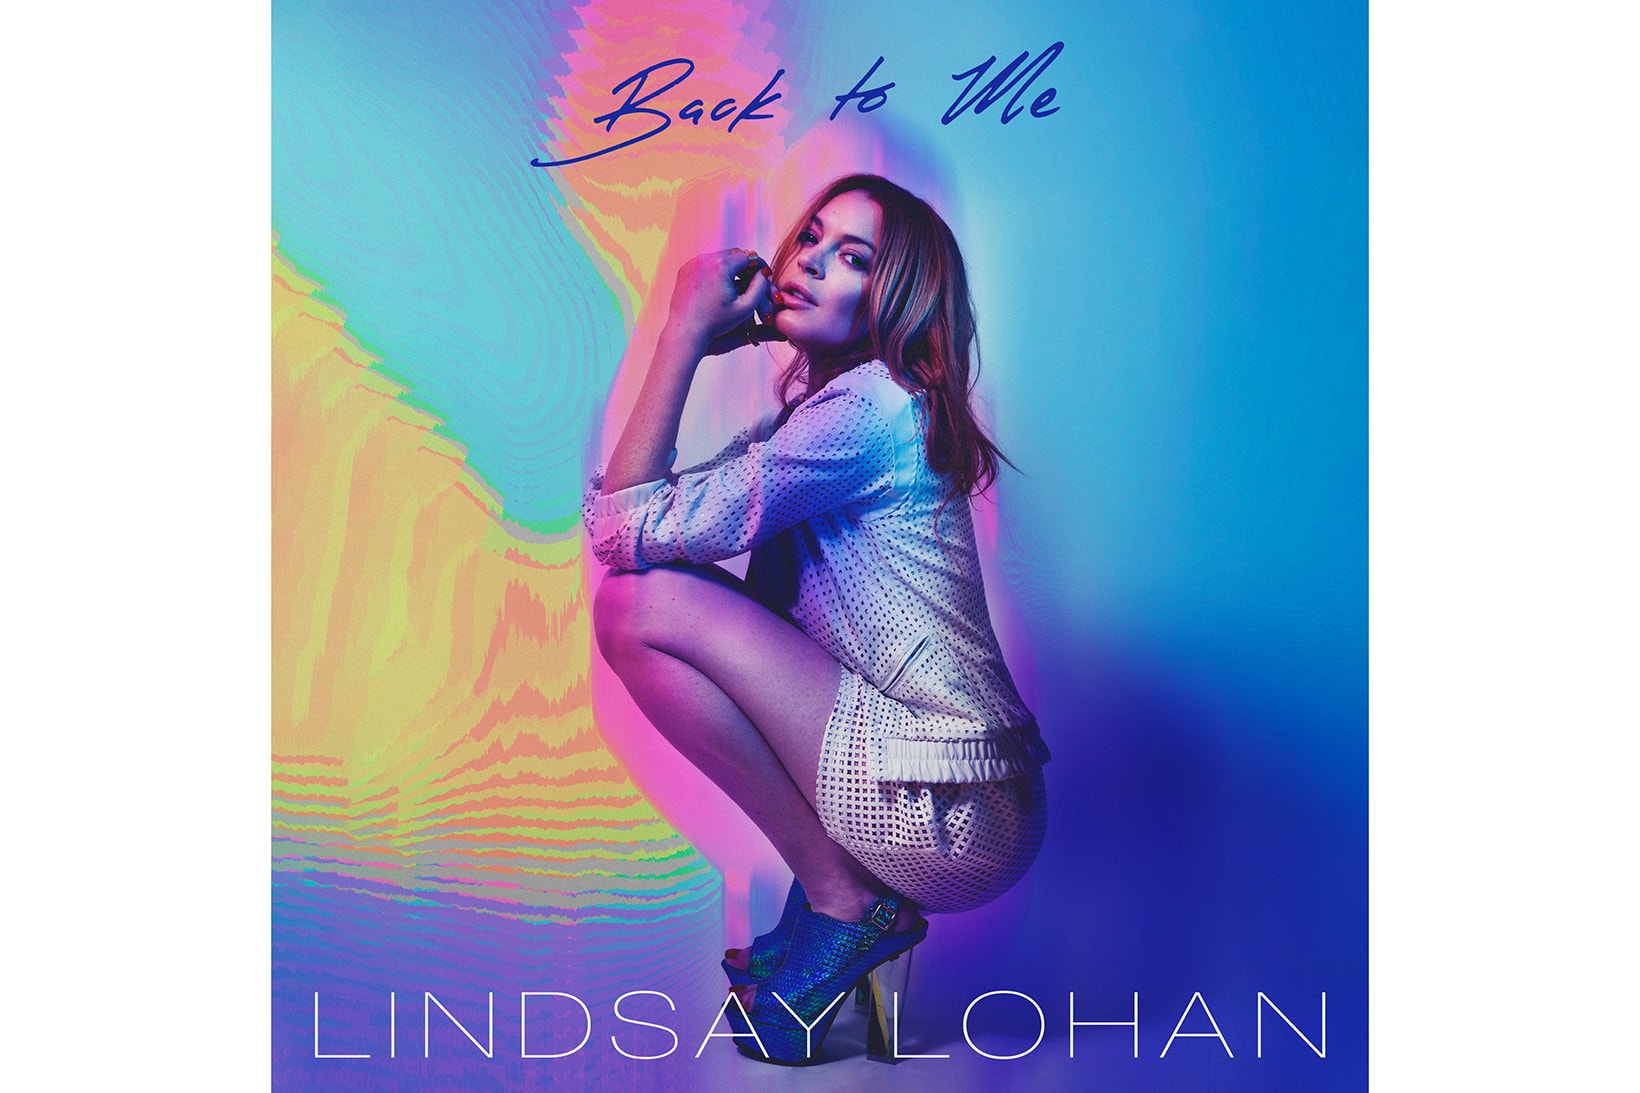 lindsay lohan new single track song comeback music singer artist 